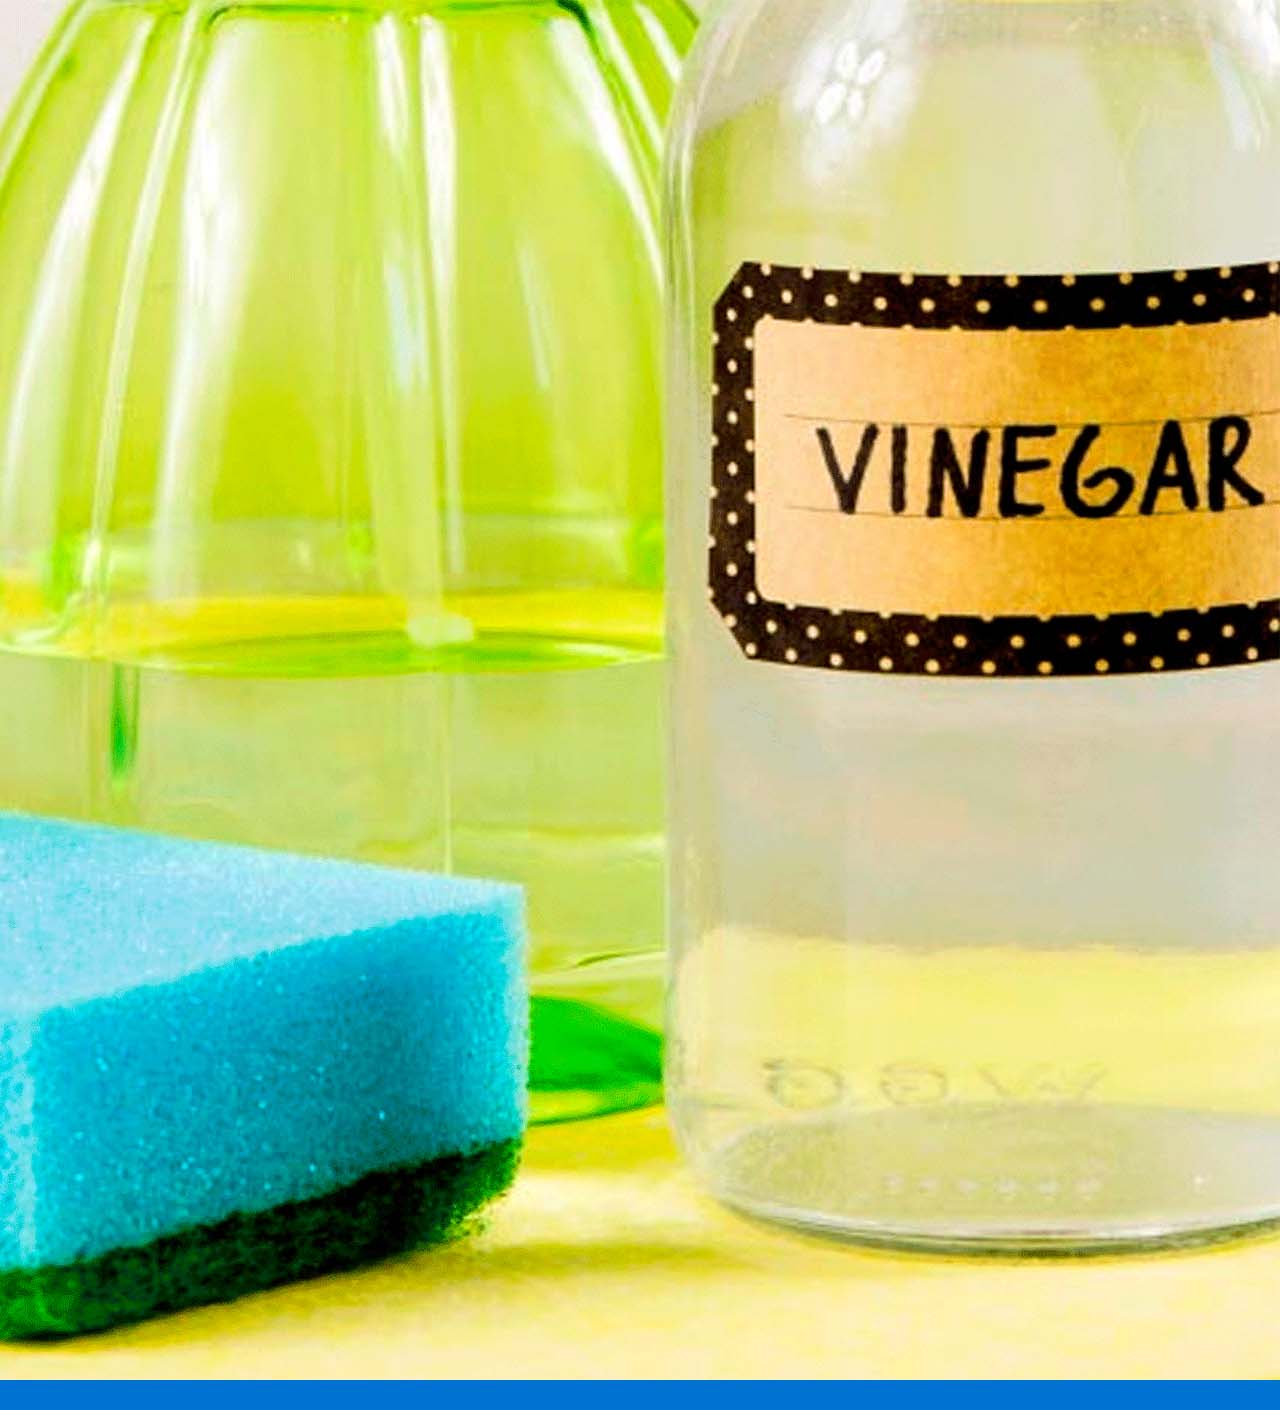 Vinagre de limpieza: cómo usarlo en casa